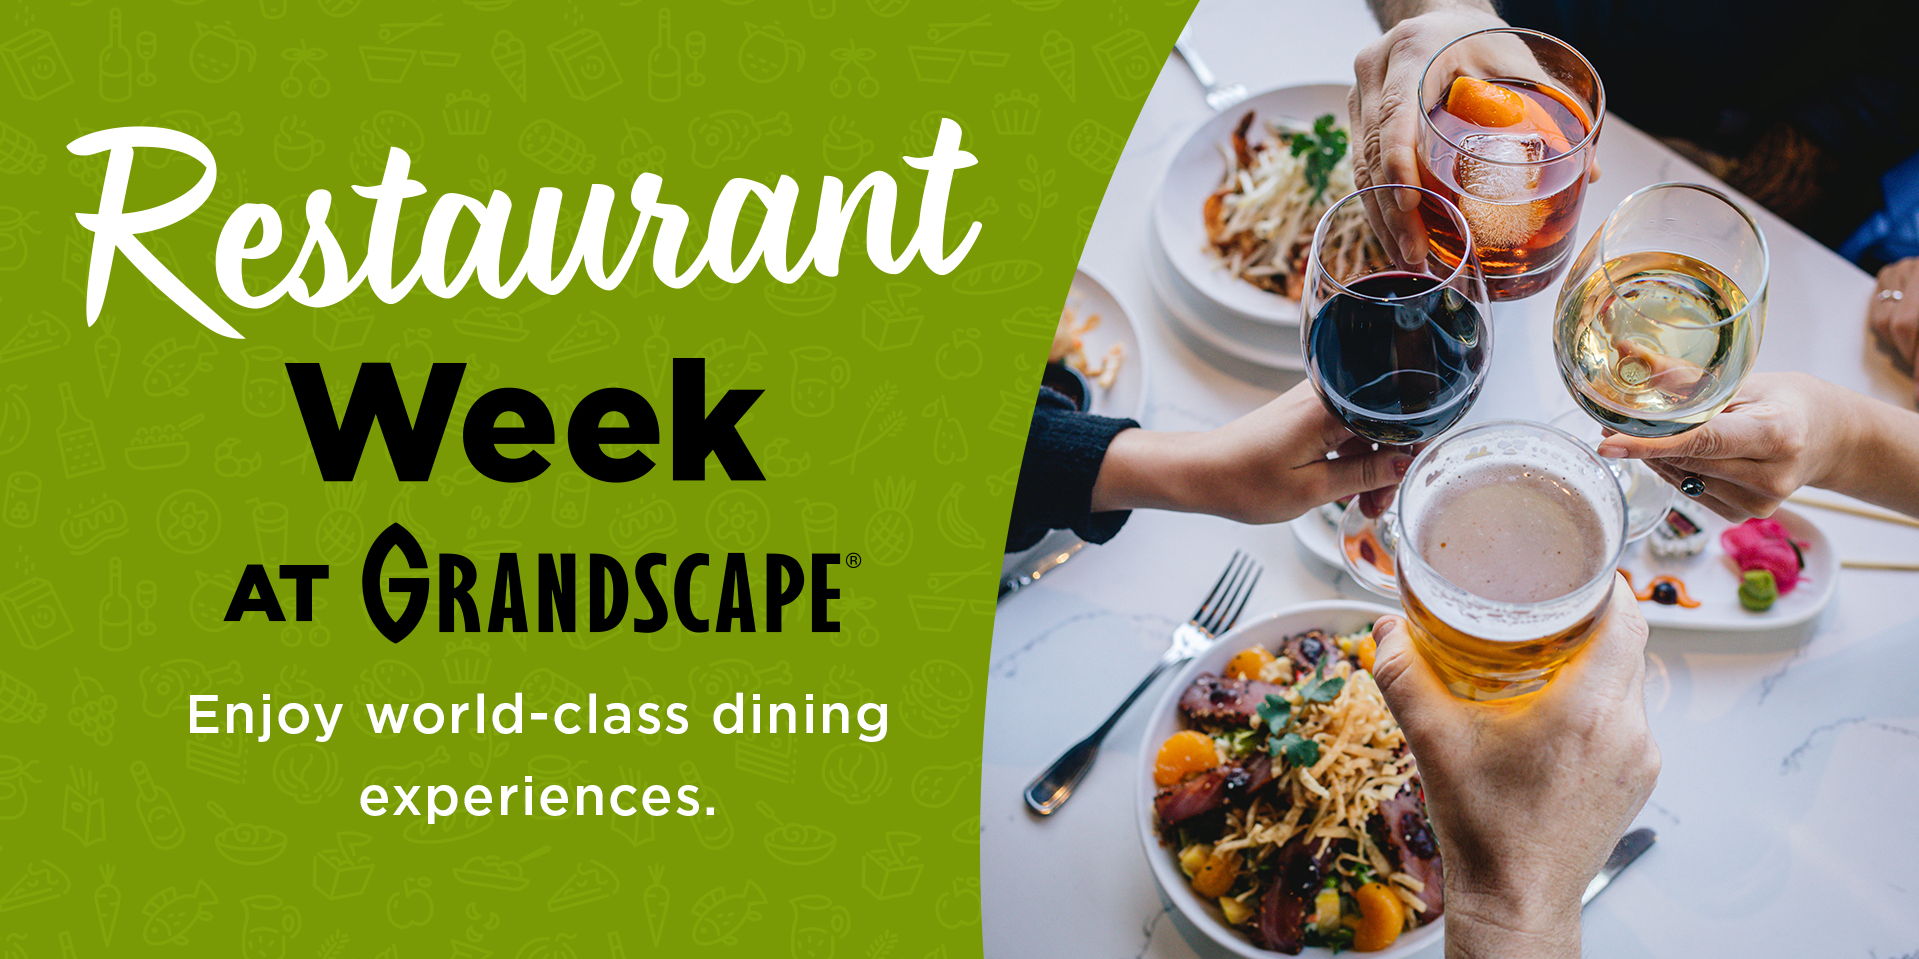 Restaurant Week at Grandscape promotional image